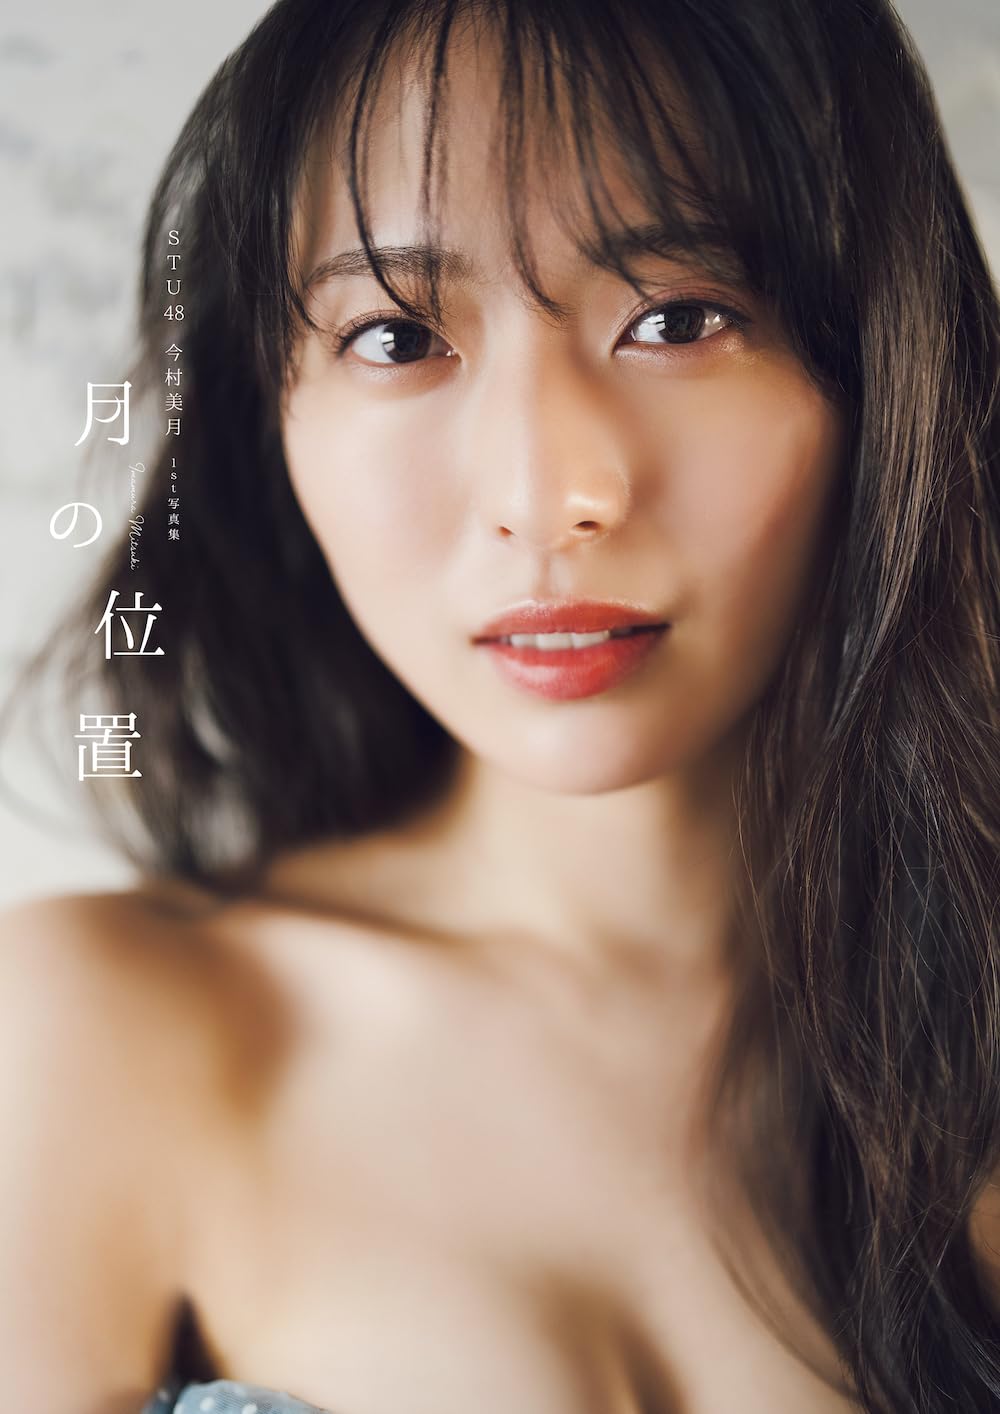 Mitsuki Imamura Photo Book "Tsuki no ichi" / AKB48 STU48